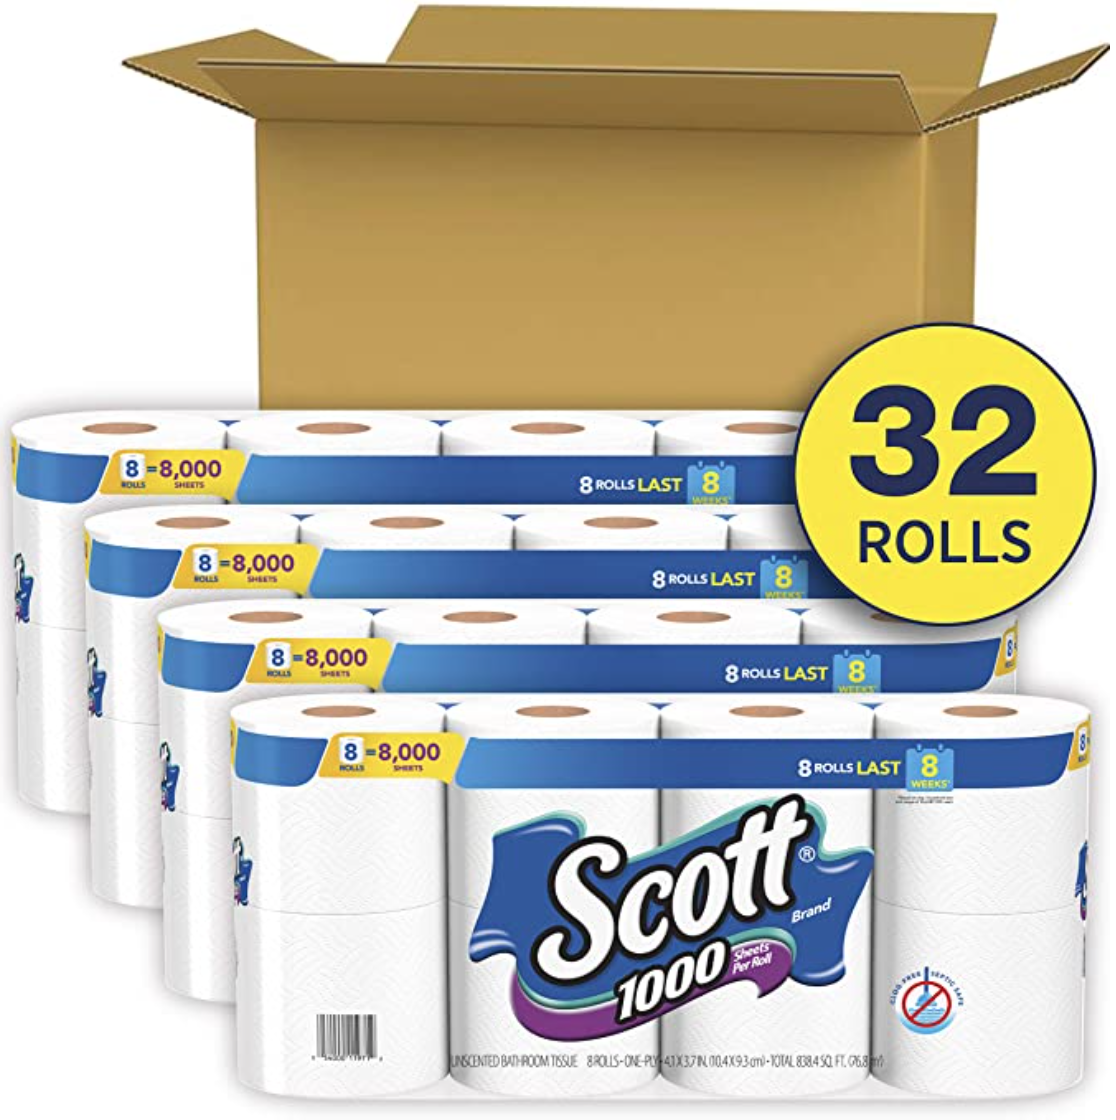 Scott 1000 Toilet Paper